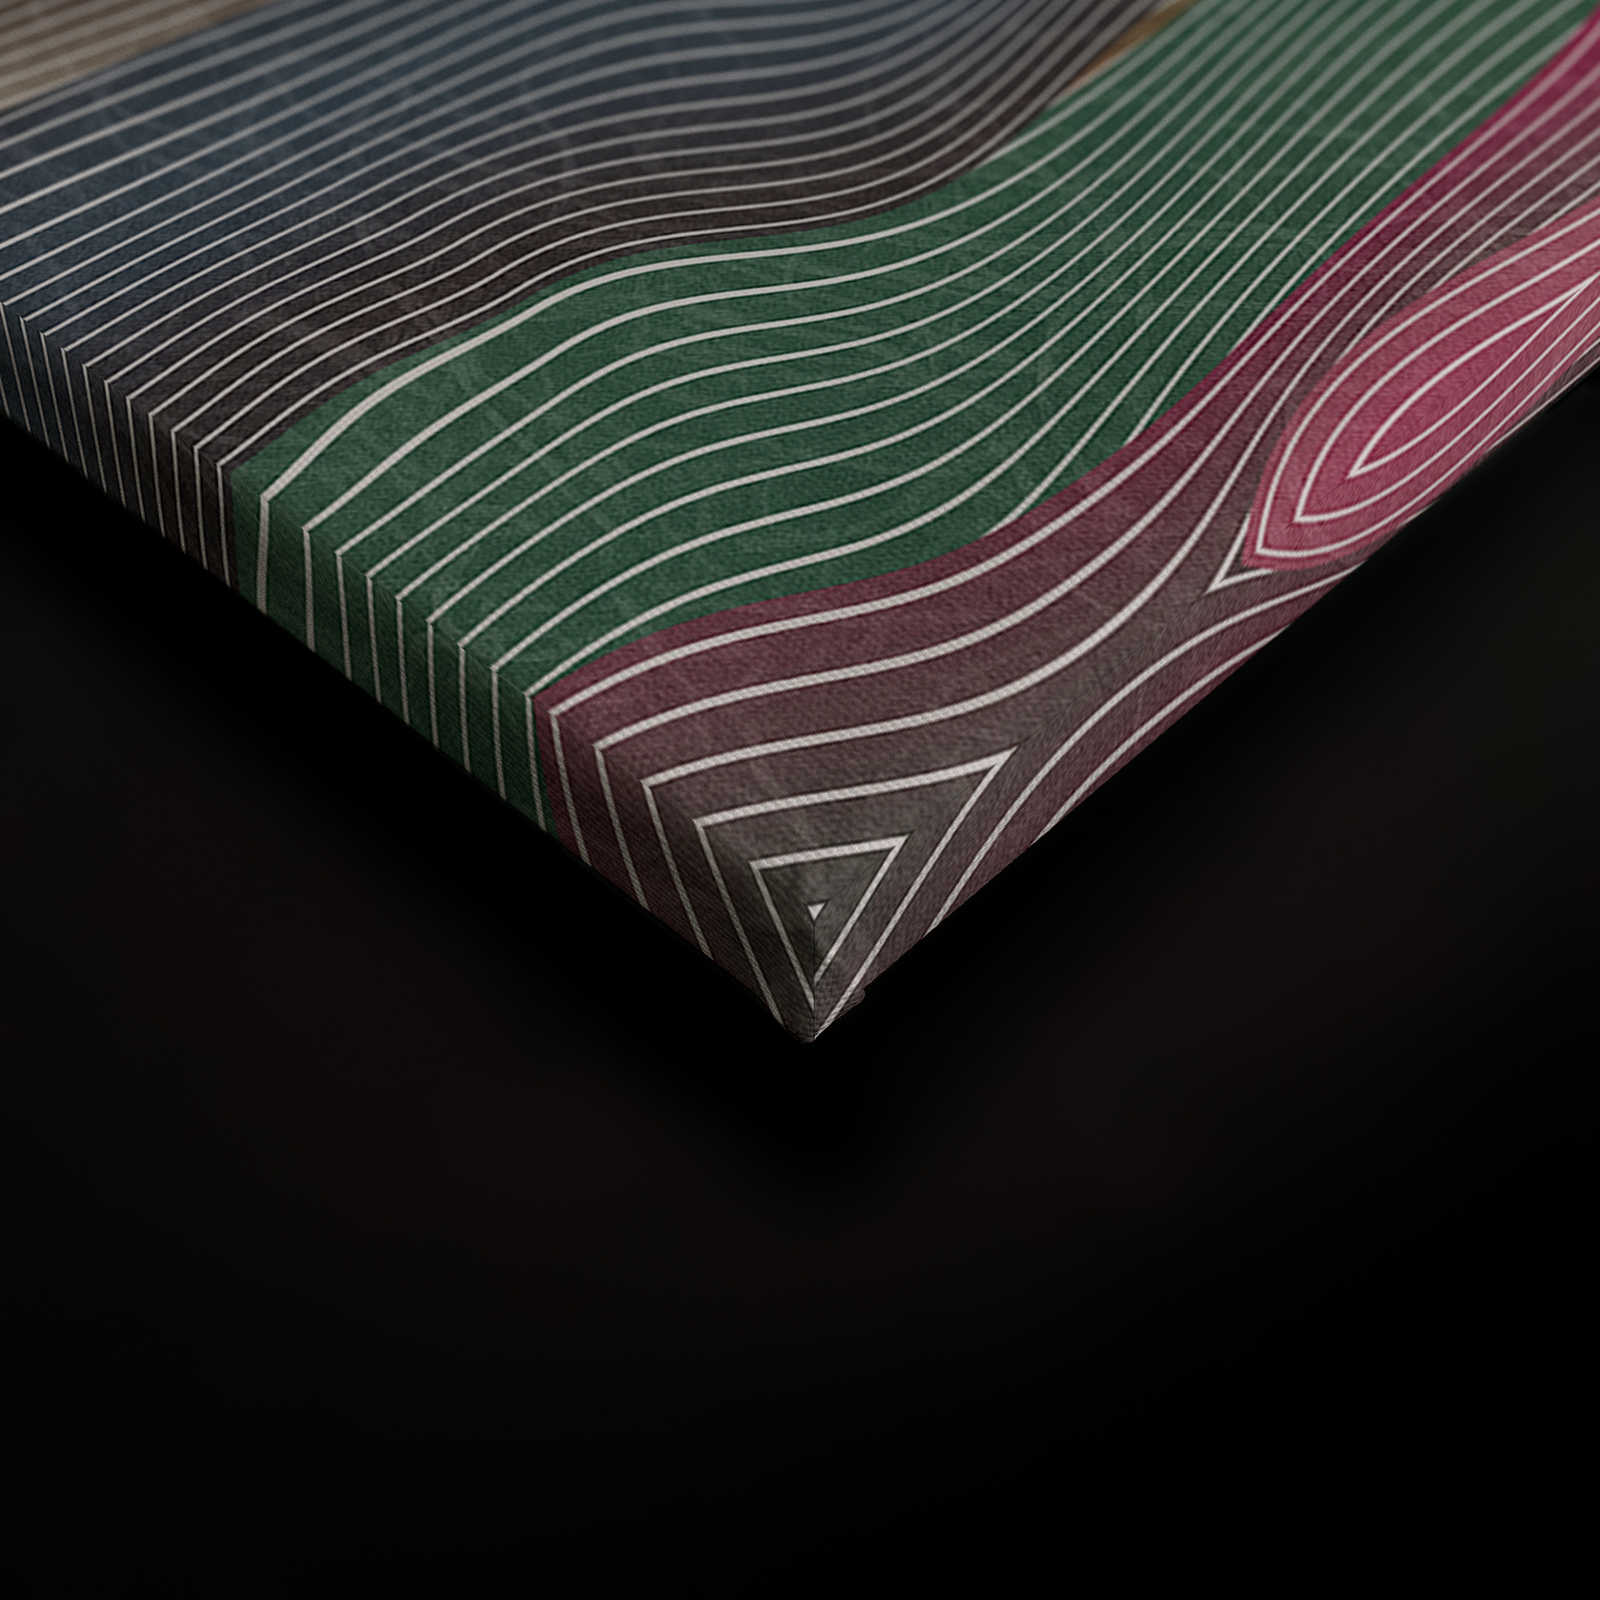             Space 1 - Toile motif vagues rose & vert style rétro - 1,20 m x 0,80 m
        